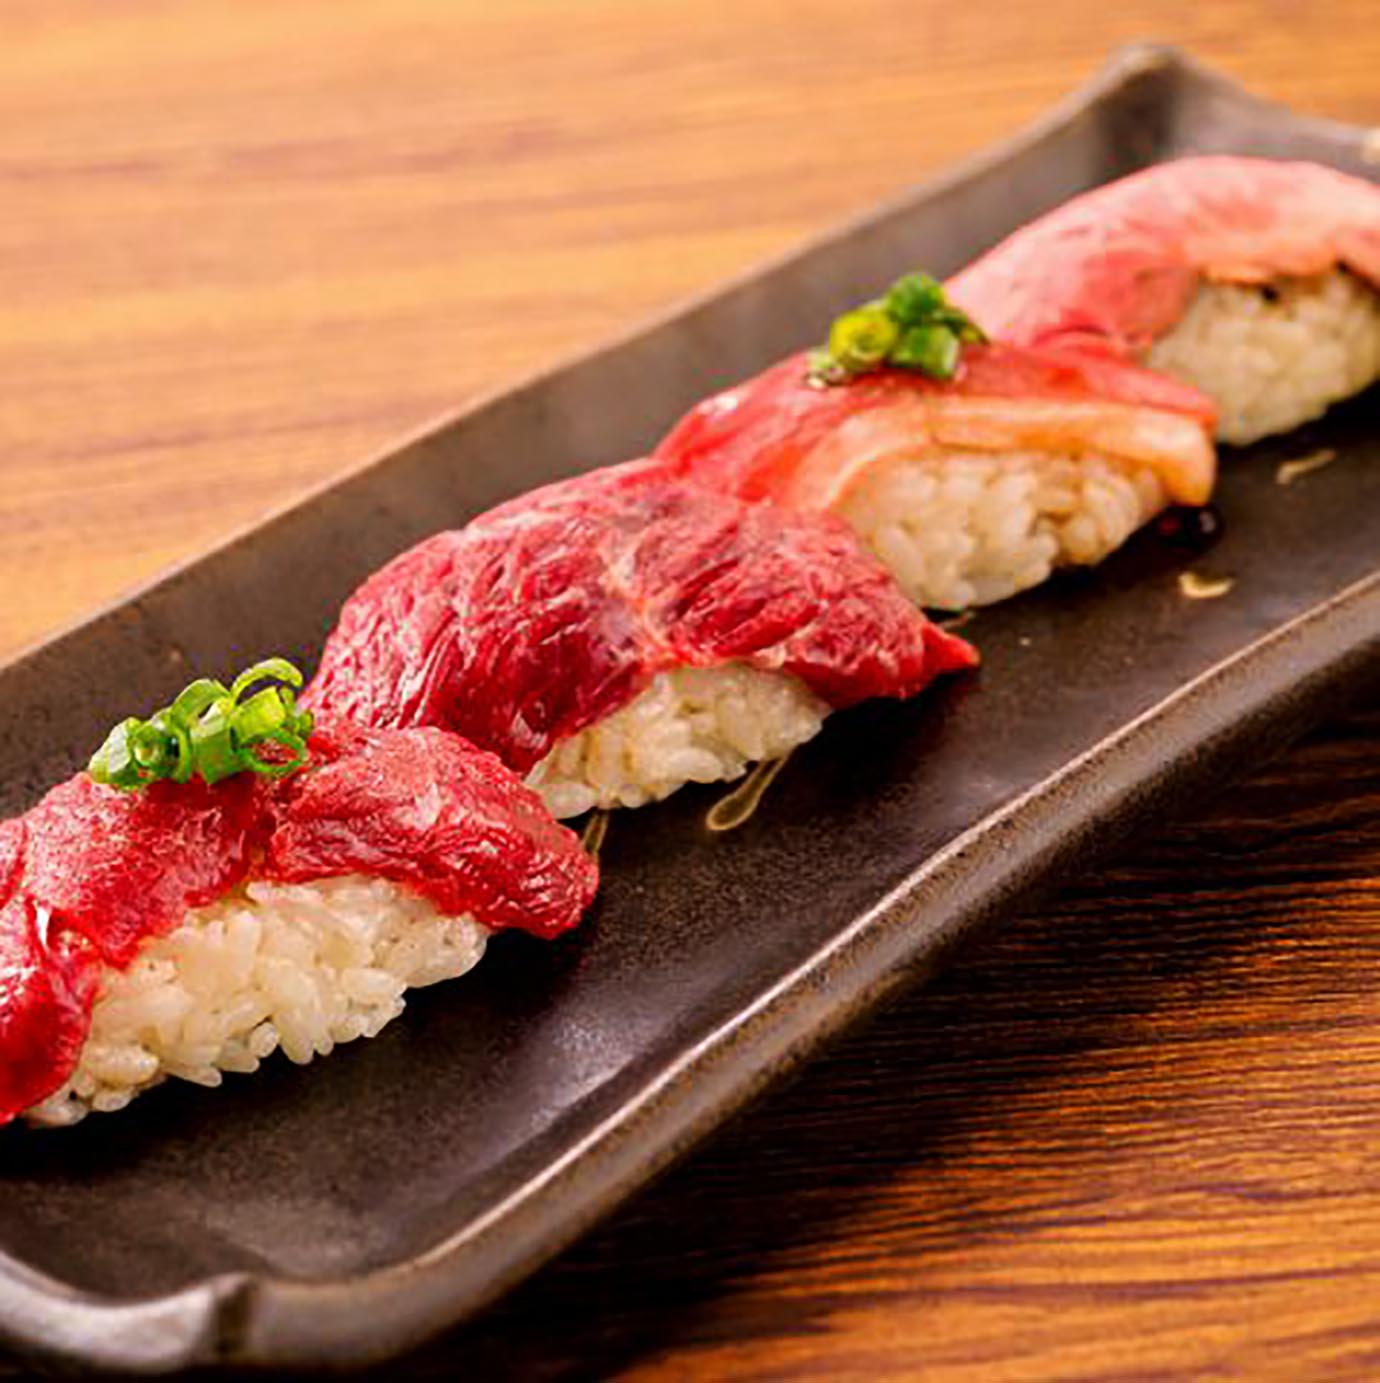 【魅惑の食べ放題】雲丹トロ寿司と肉寿司の食べ放題・飲み放題が贅沢すぎる / 吉祥寺肉寿司